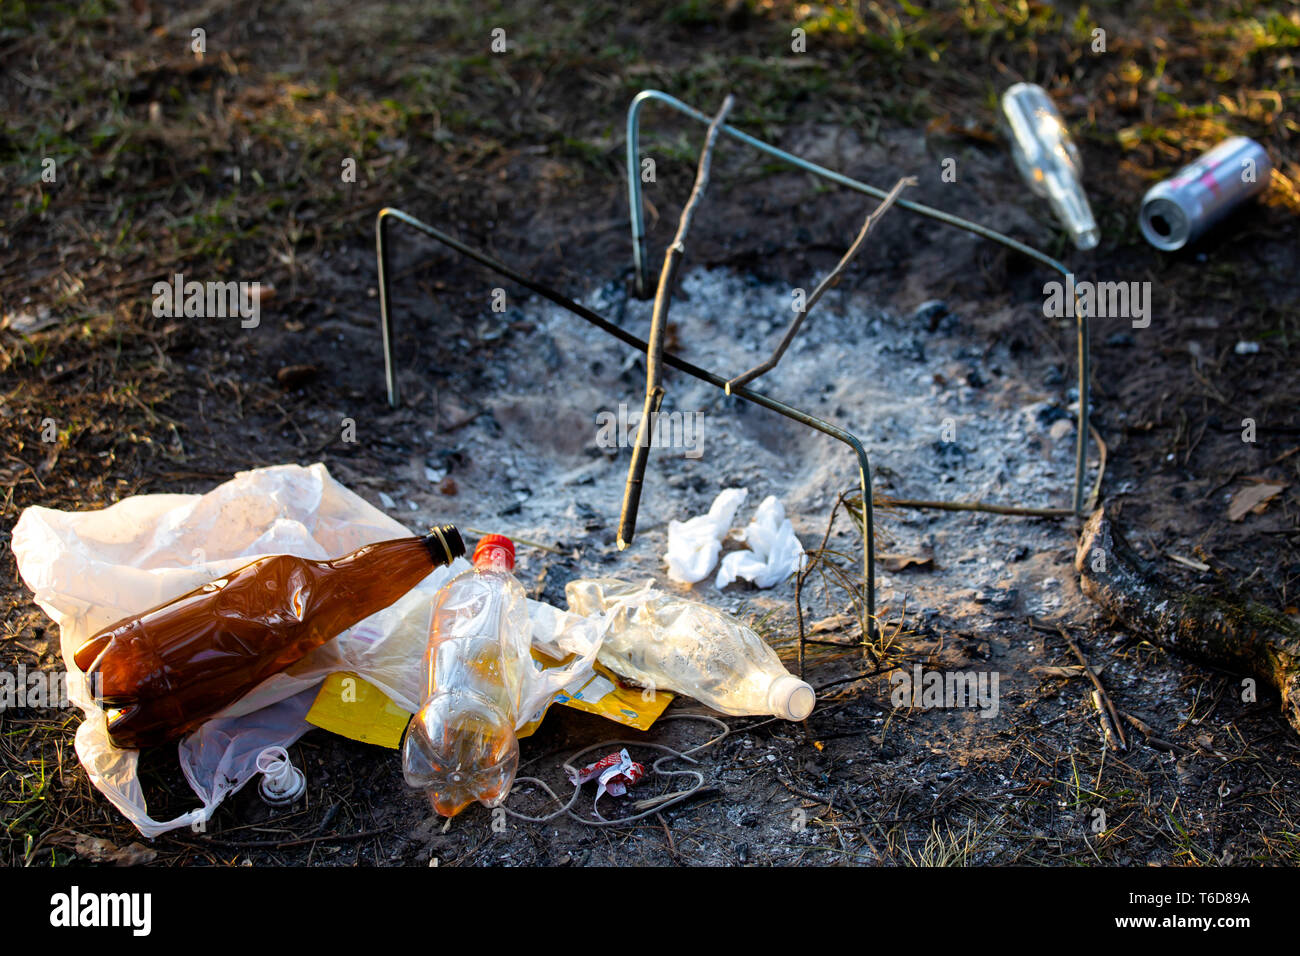 Ein Haufen Müll im Forest Park in der Nähe der Feuerstelle. Umweltverschmutzung Stockfoto